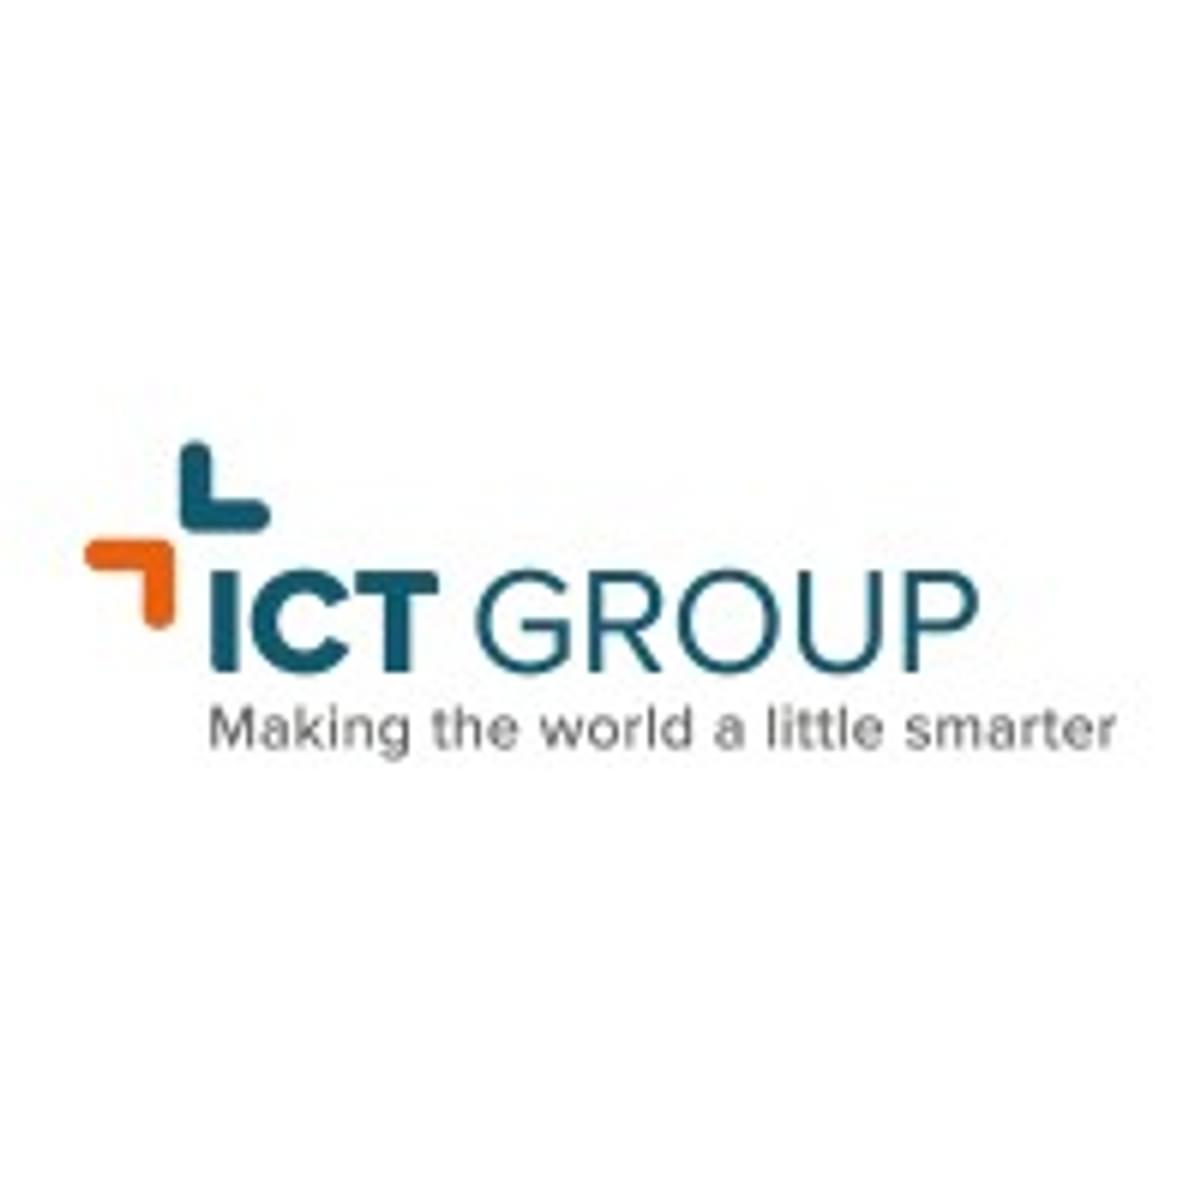 ICT Group benoemt Karim Henkens als CEO image